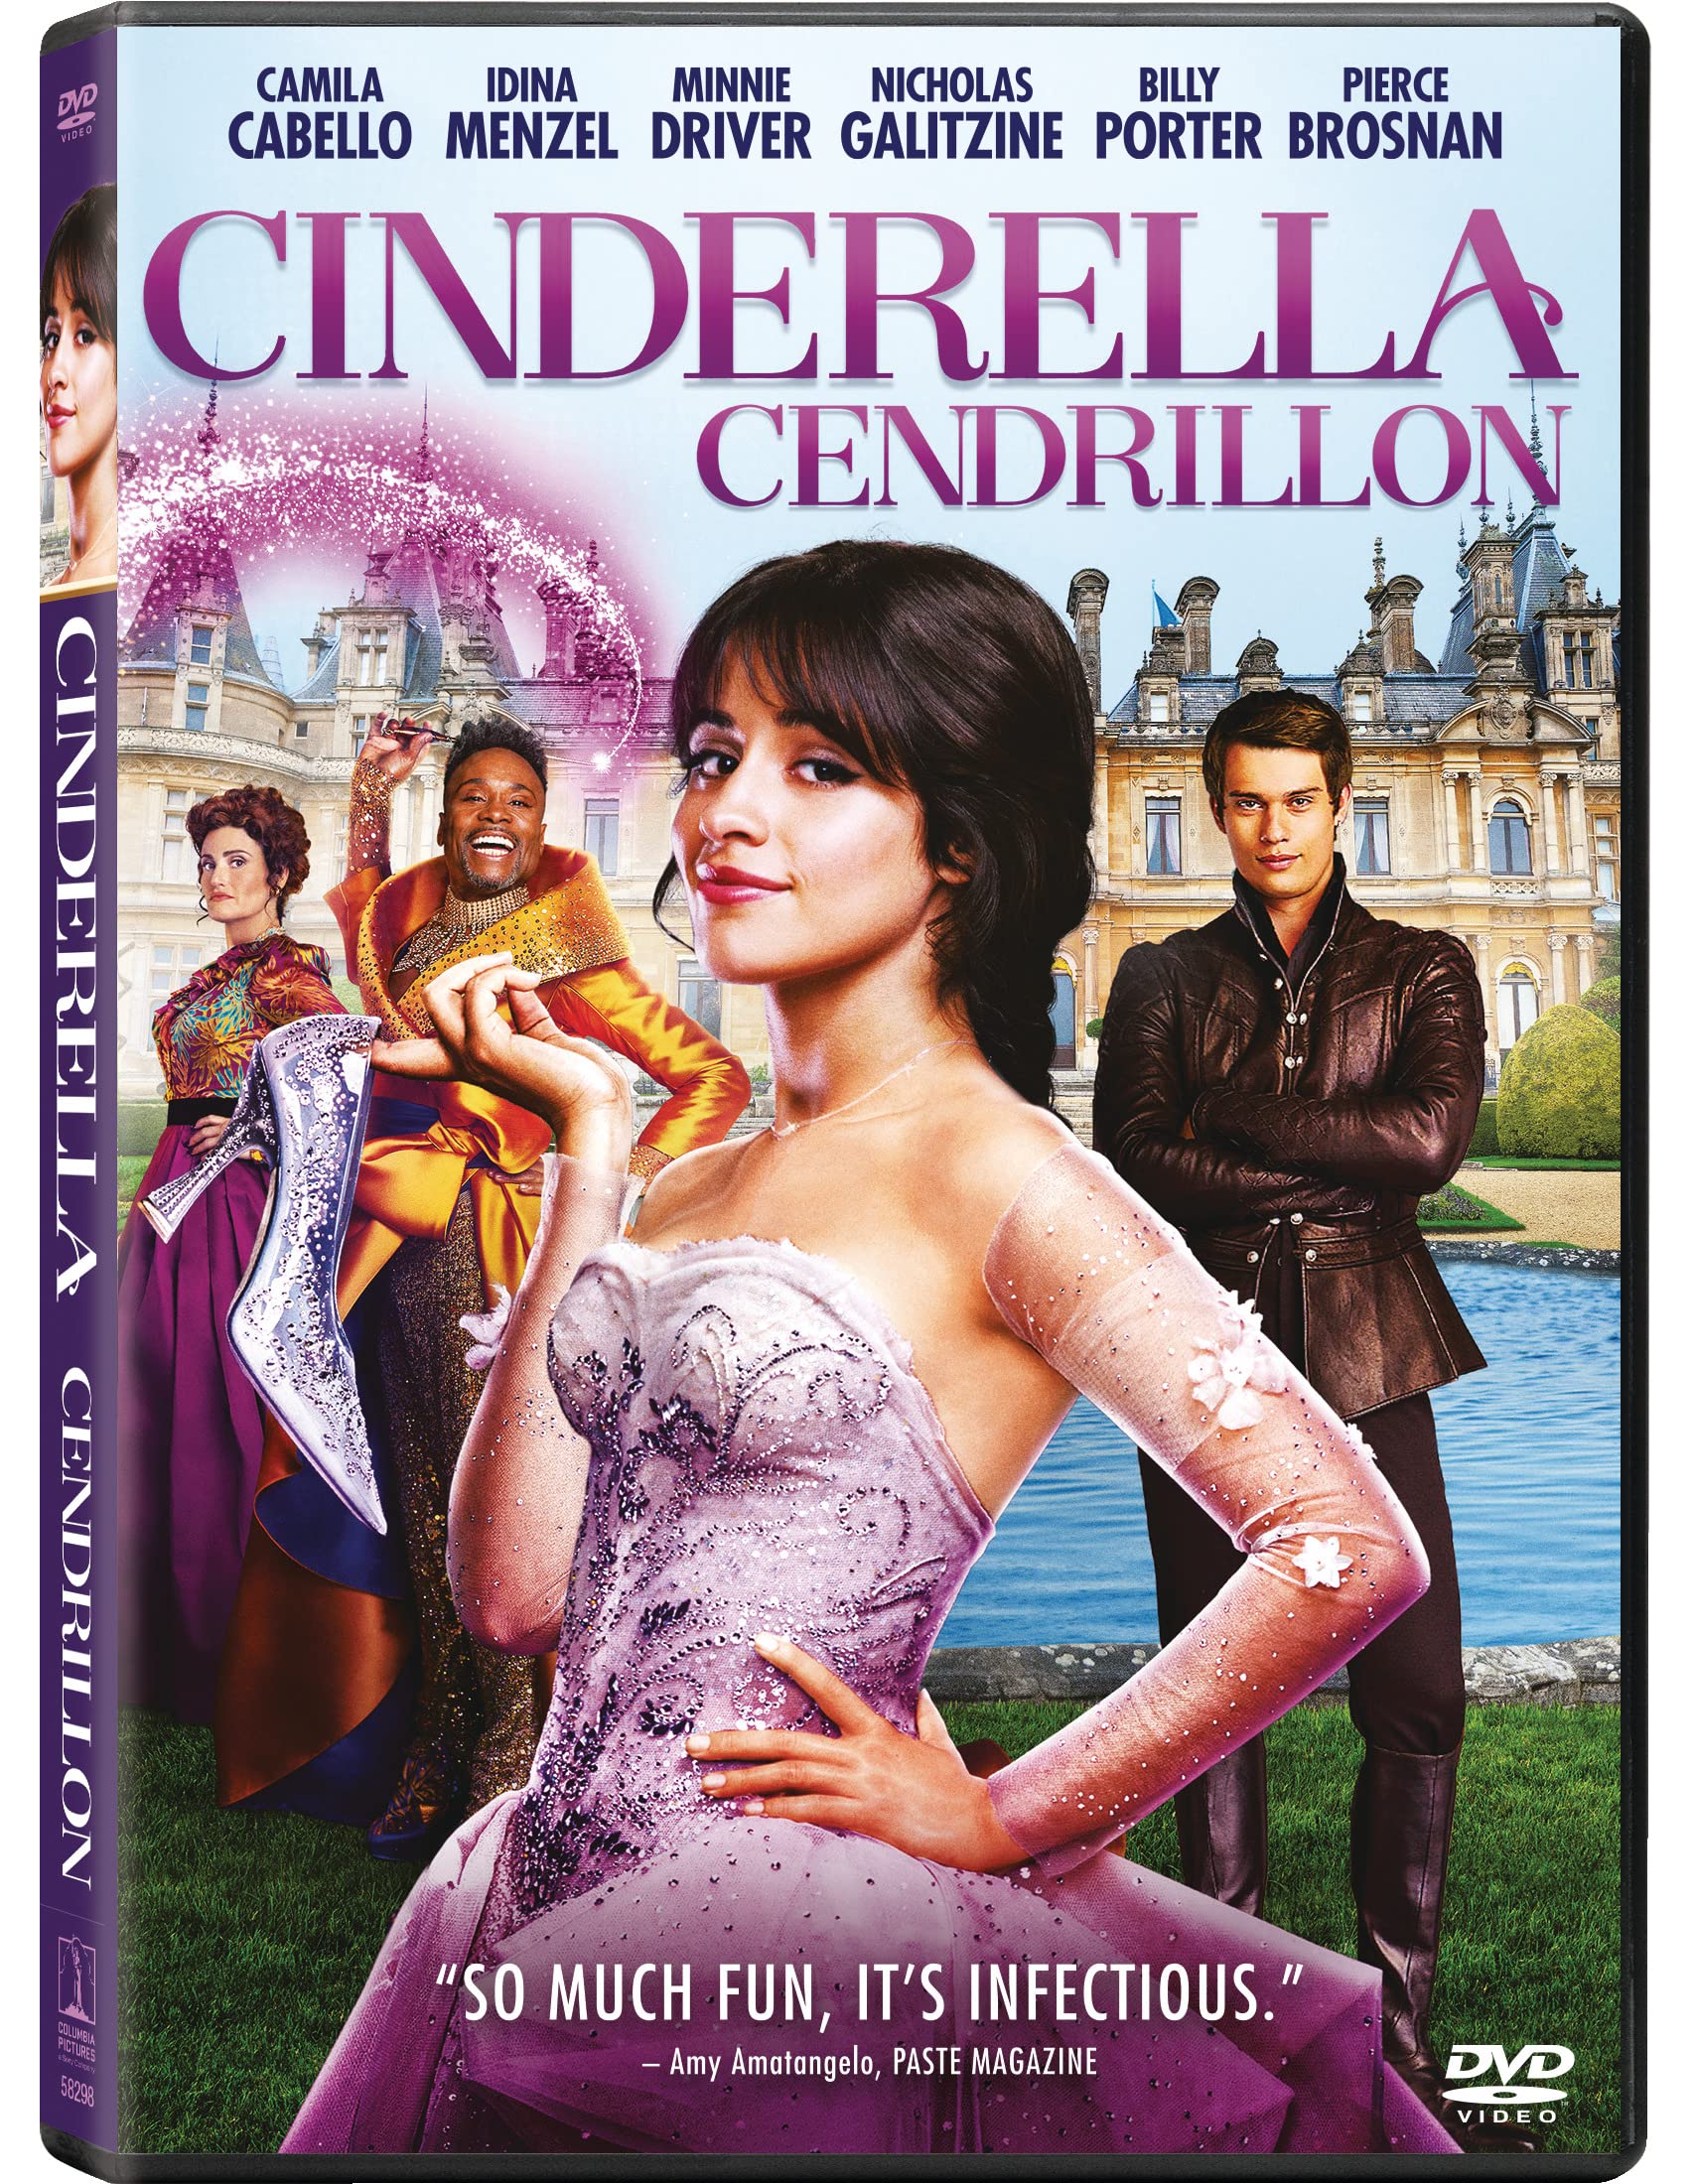 CINDERELLA – BILINGUAL – DVD (CENDRILLON) on MovieShack